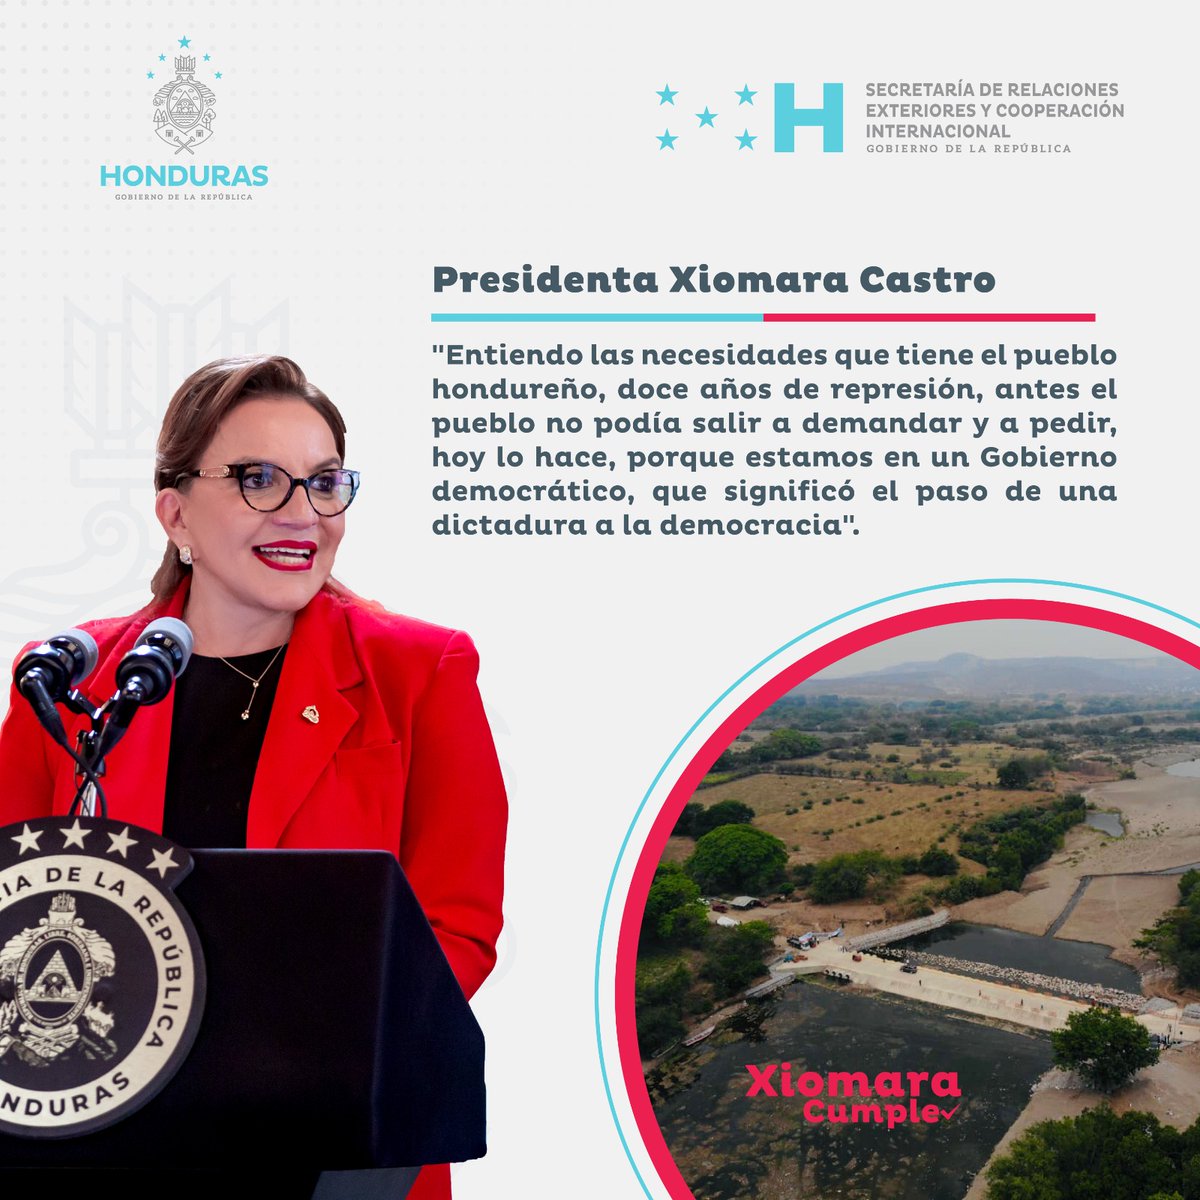 📌| En la inauguración del vado sumergible en la Costa de los Amates, la Presidenta Xiomara Castro manifestó conocer las necesidades que tiene el pueblo hondureño, tras doce años de represión.